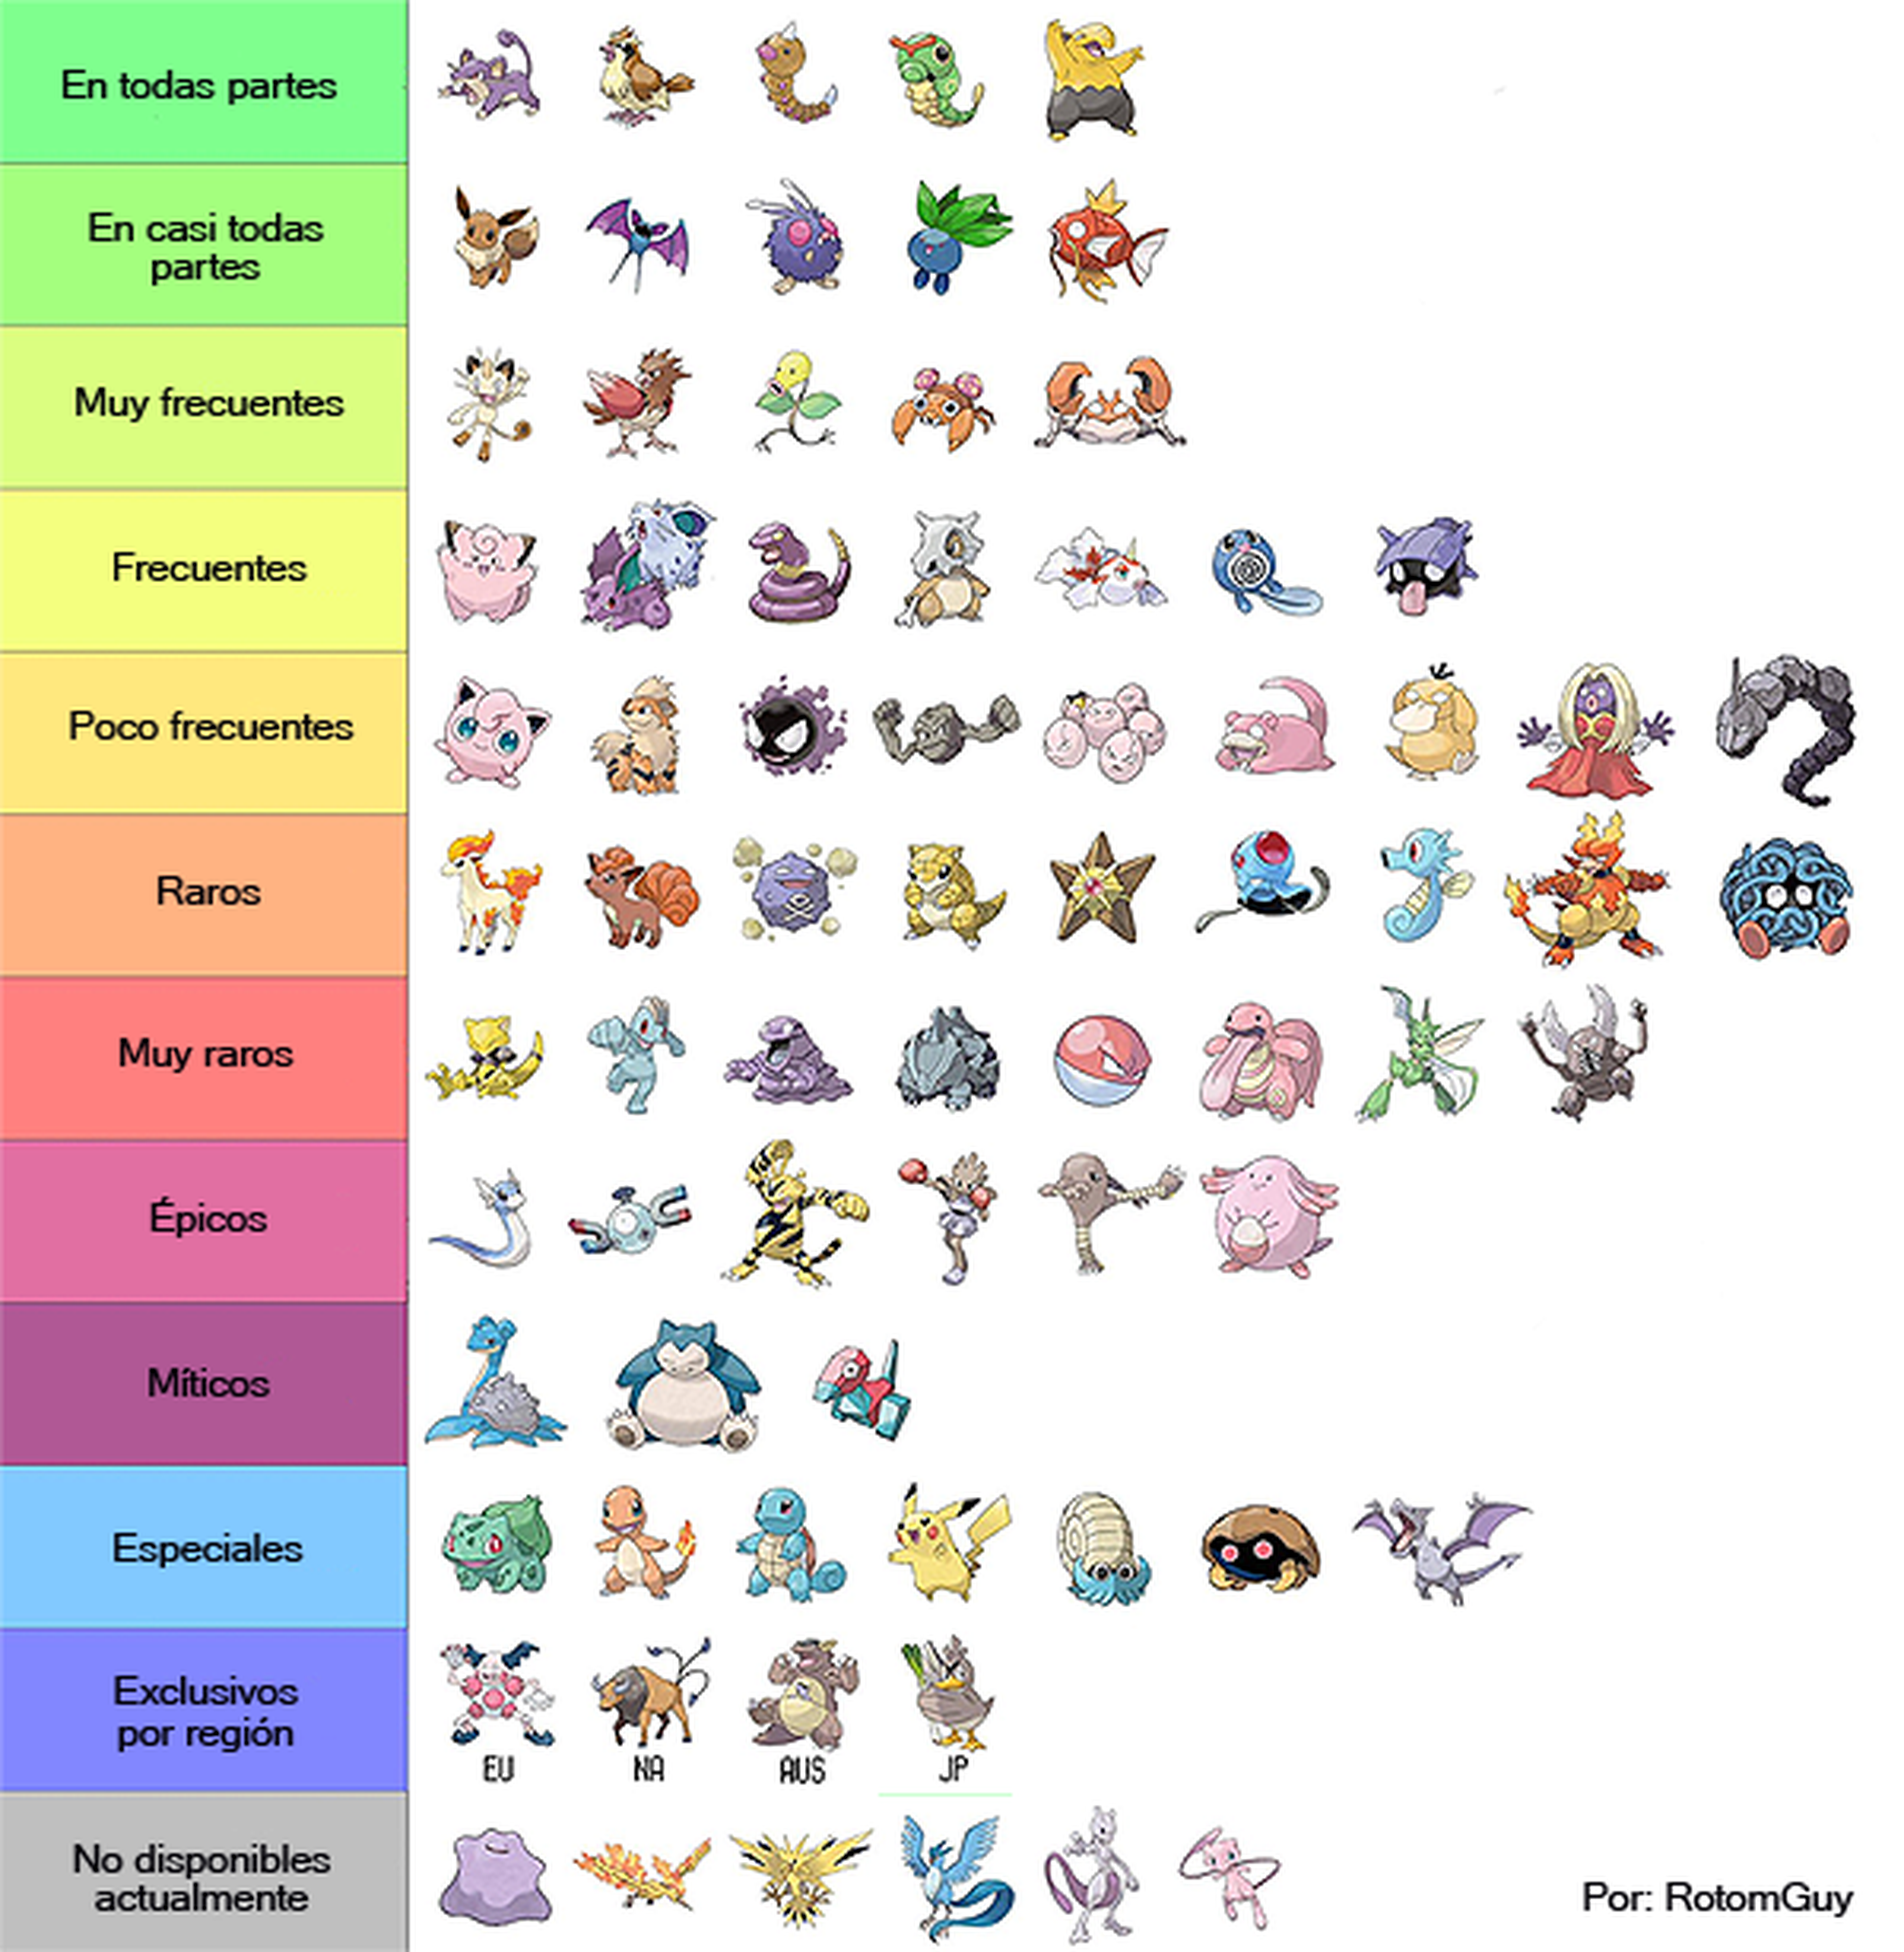 Listado de Pokémon según frecuencia de aparición en sus respectivas zonas